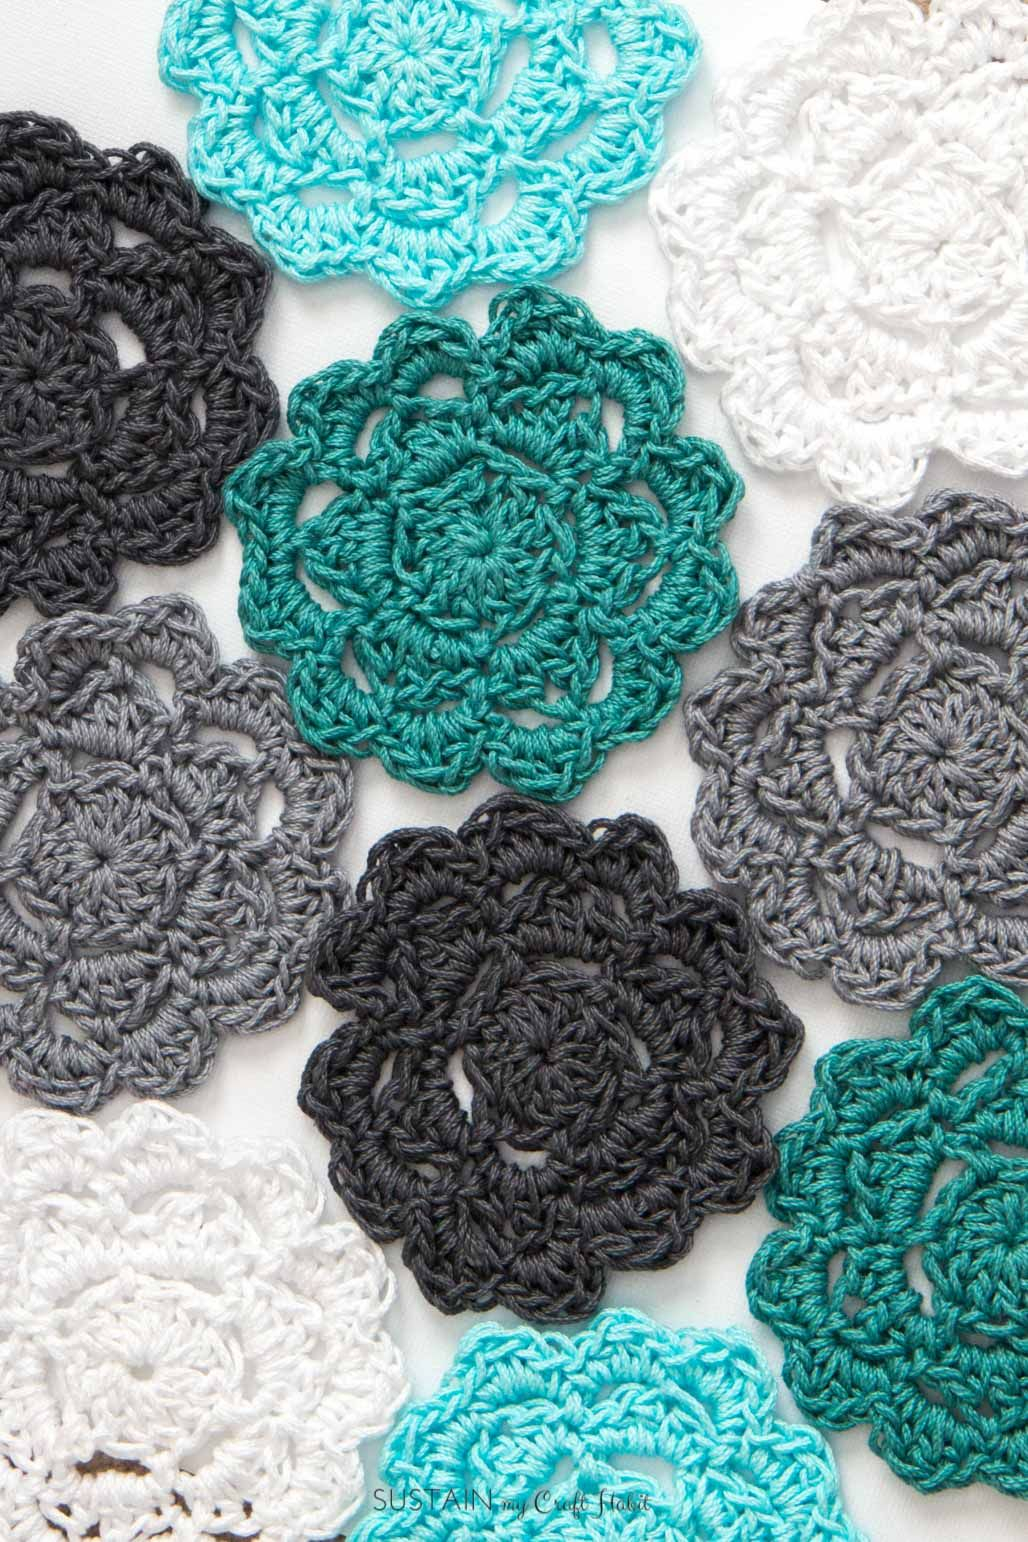 Easy Beginner Crochet Patterns Easy Crochet Coasters Pattern For Beginners Crochet Pinterest